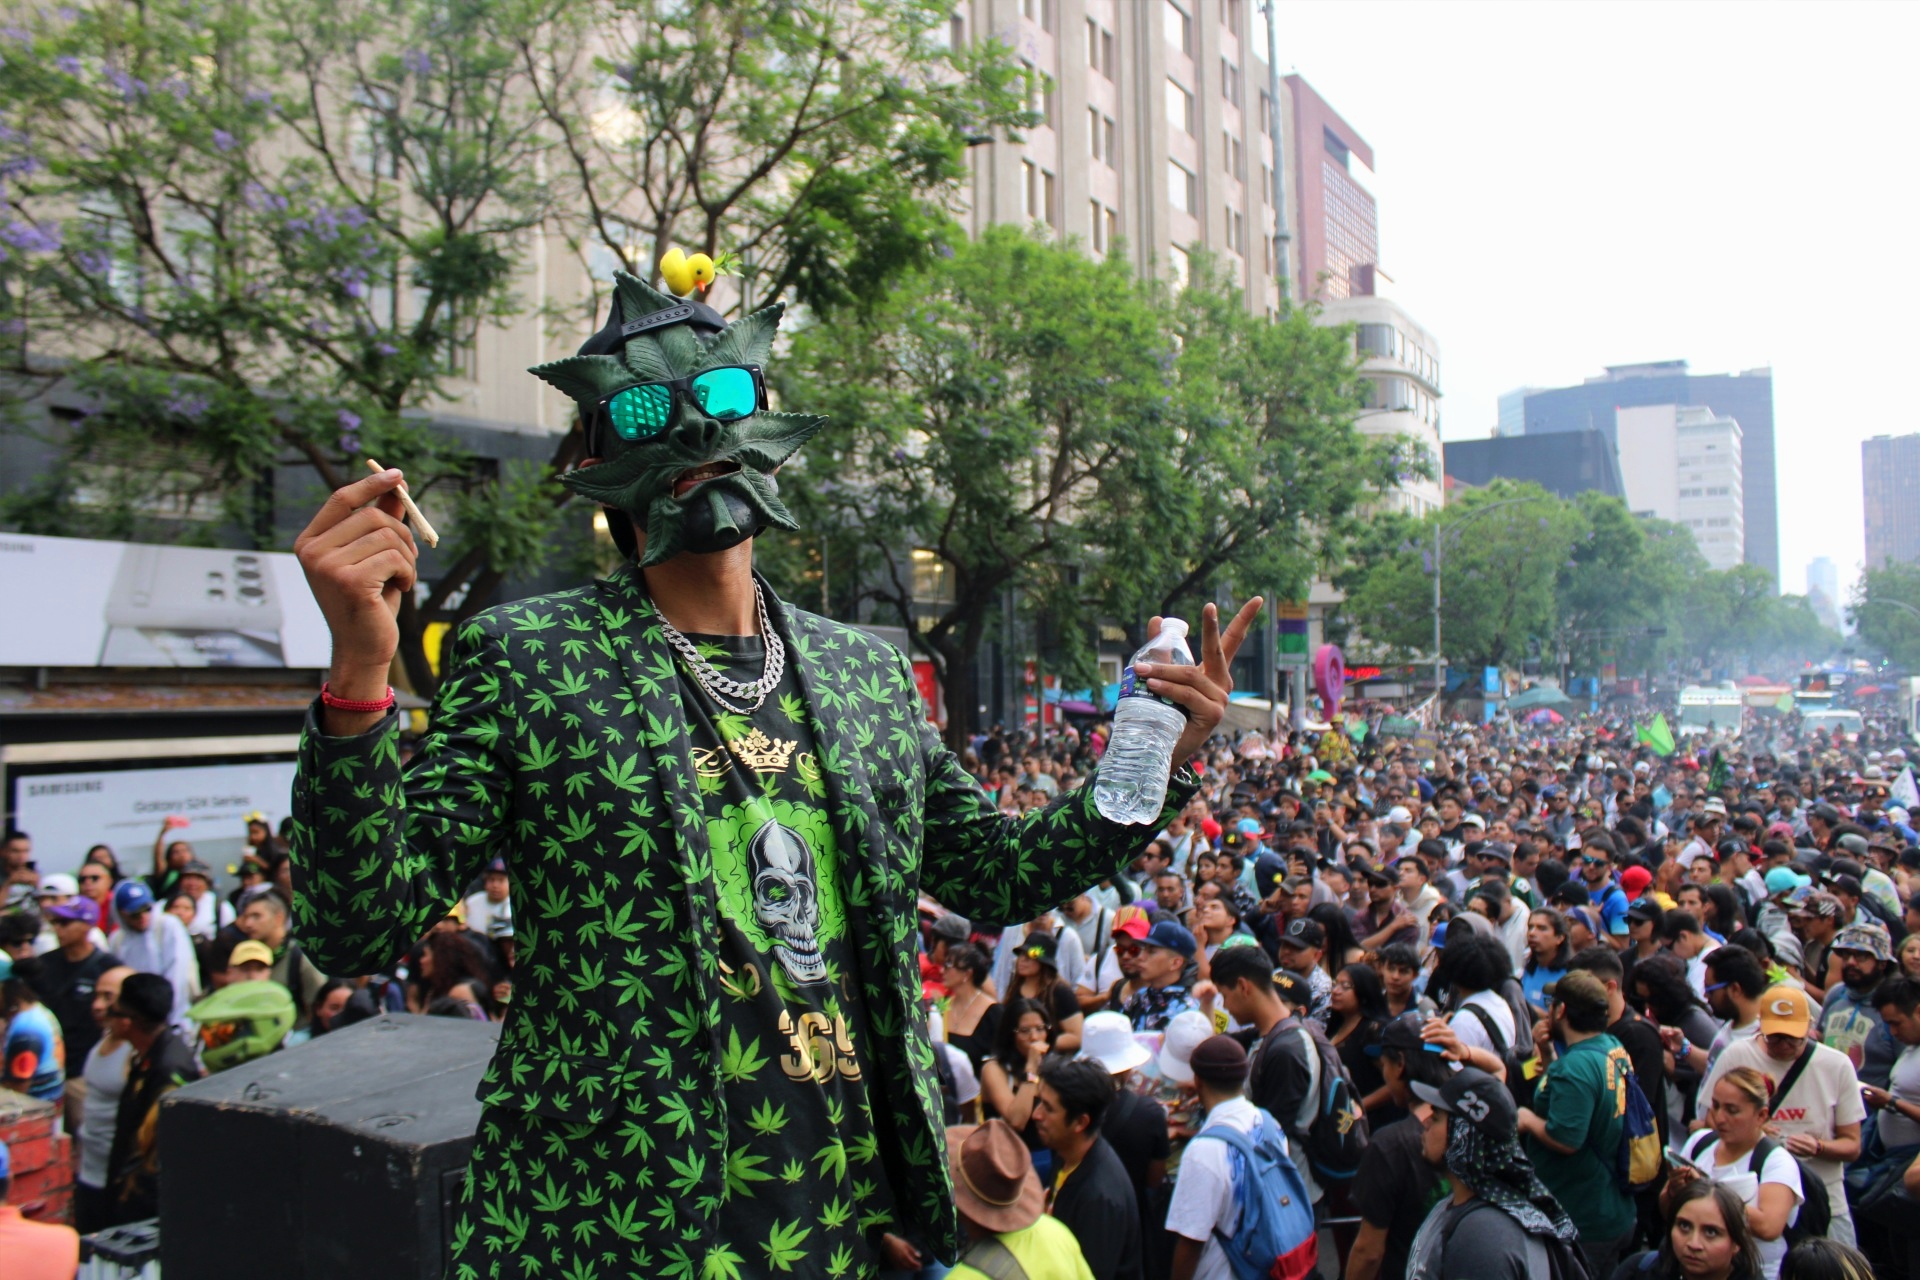 Fotografía por Astrid Salgado. Marcha XXIV por la legalización de la marihuana.